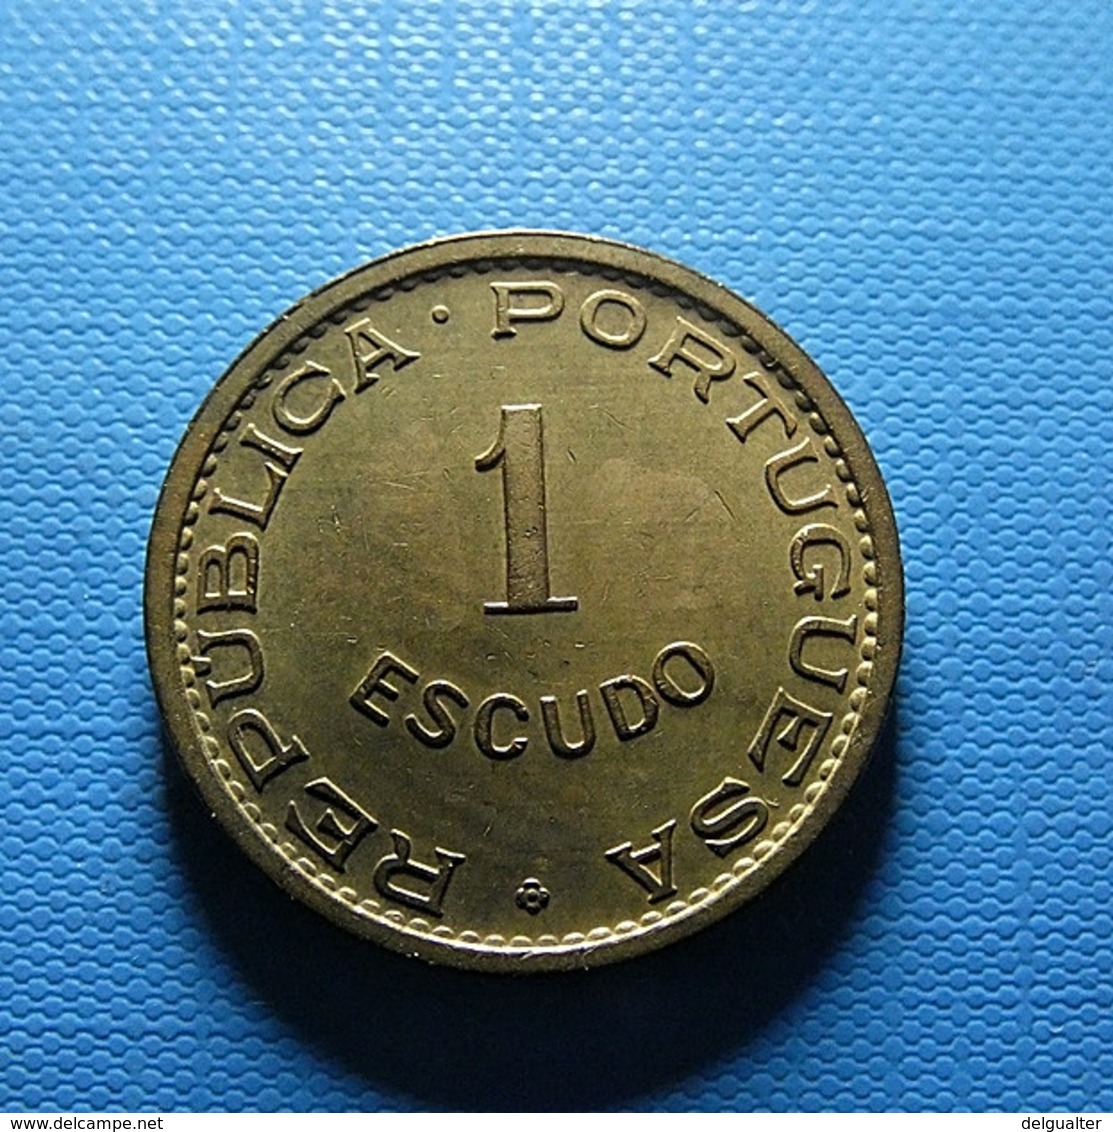 Portuguese Moçambique 1 Escudo 1973 - Portugal